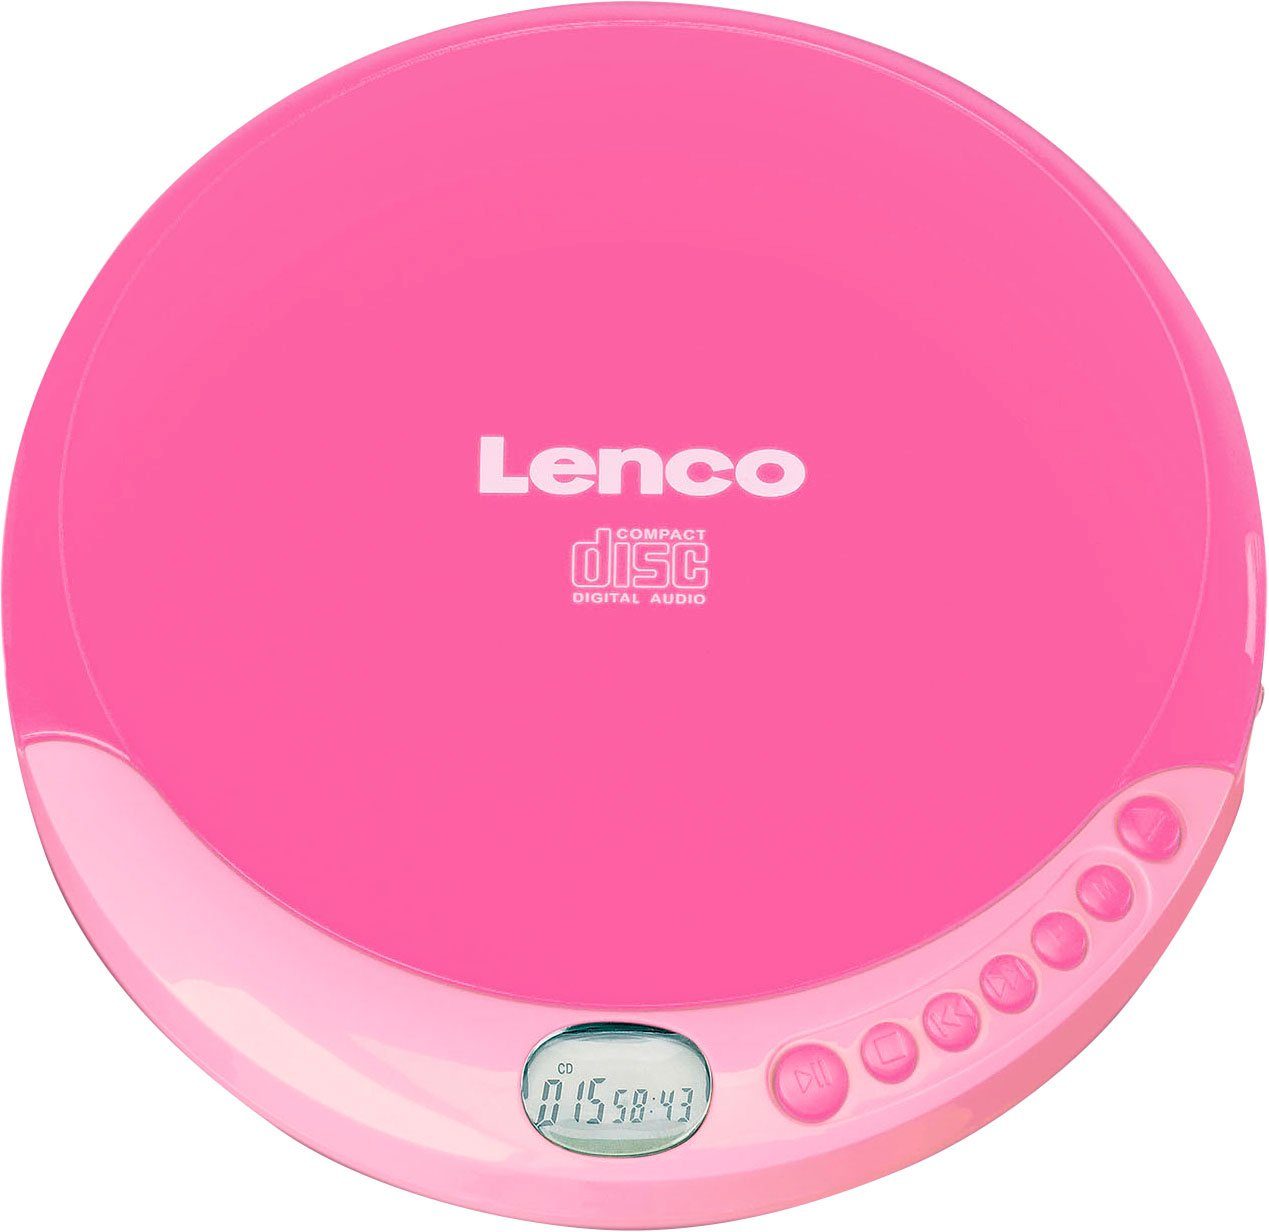 rosa CD-011 Lenco CD-Player